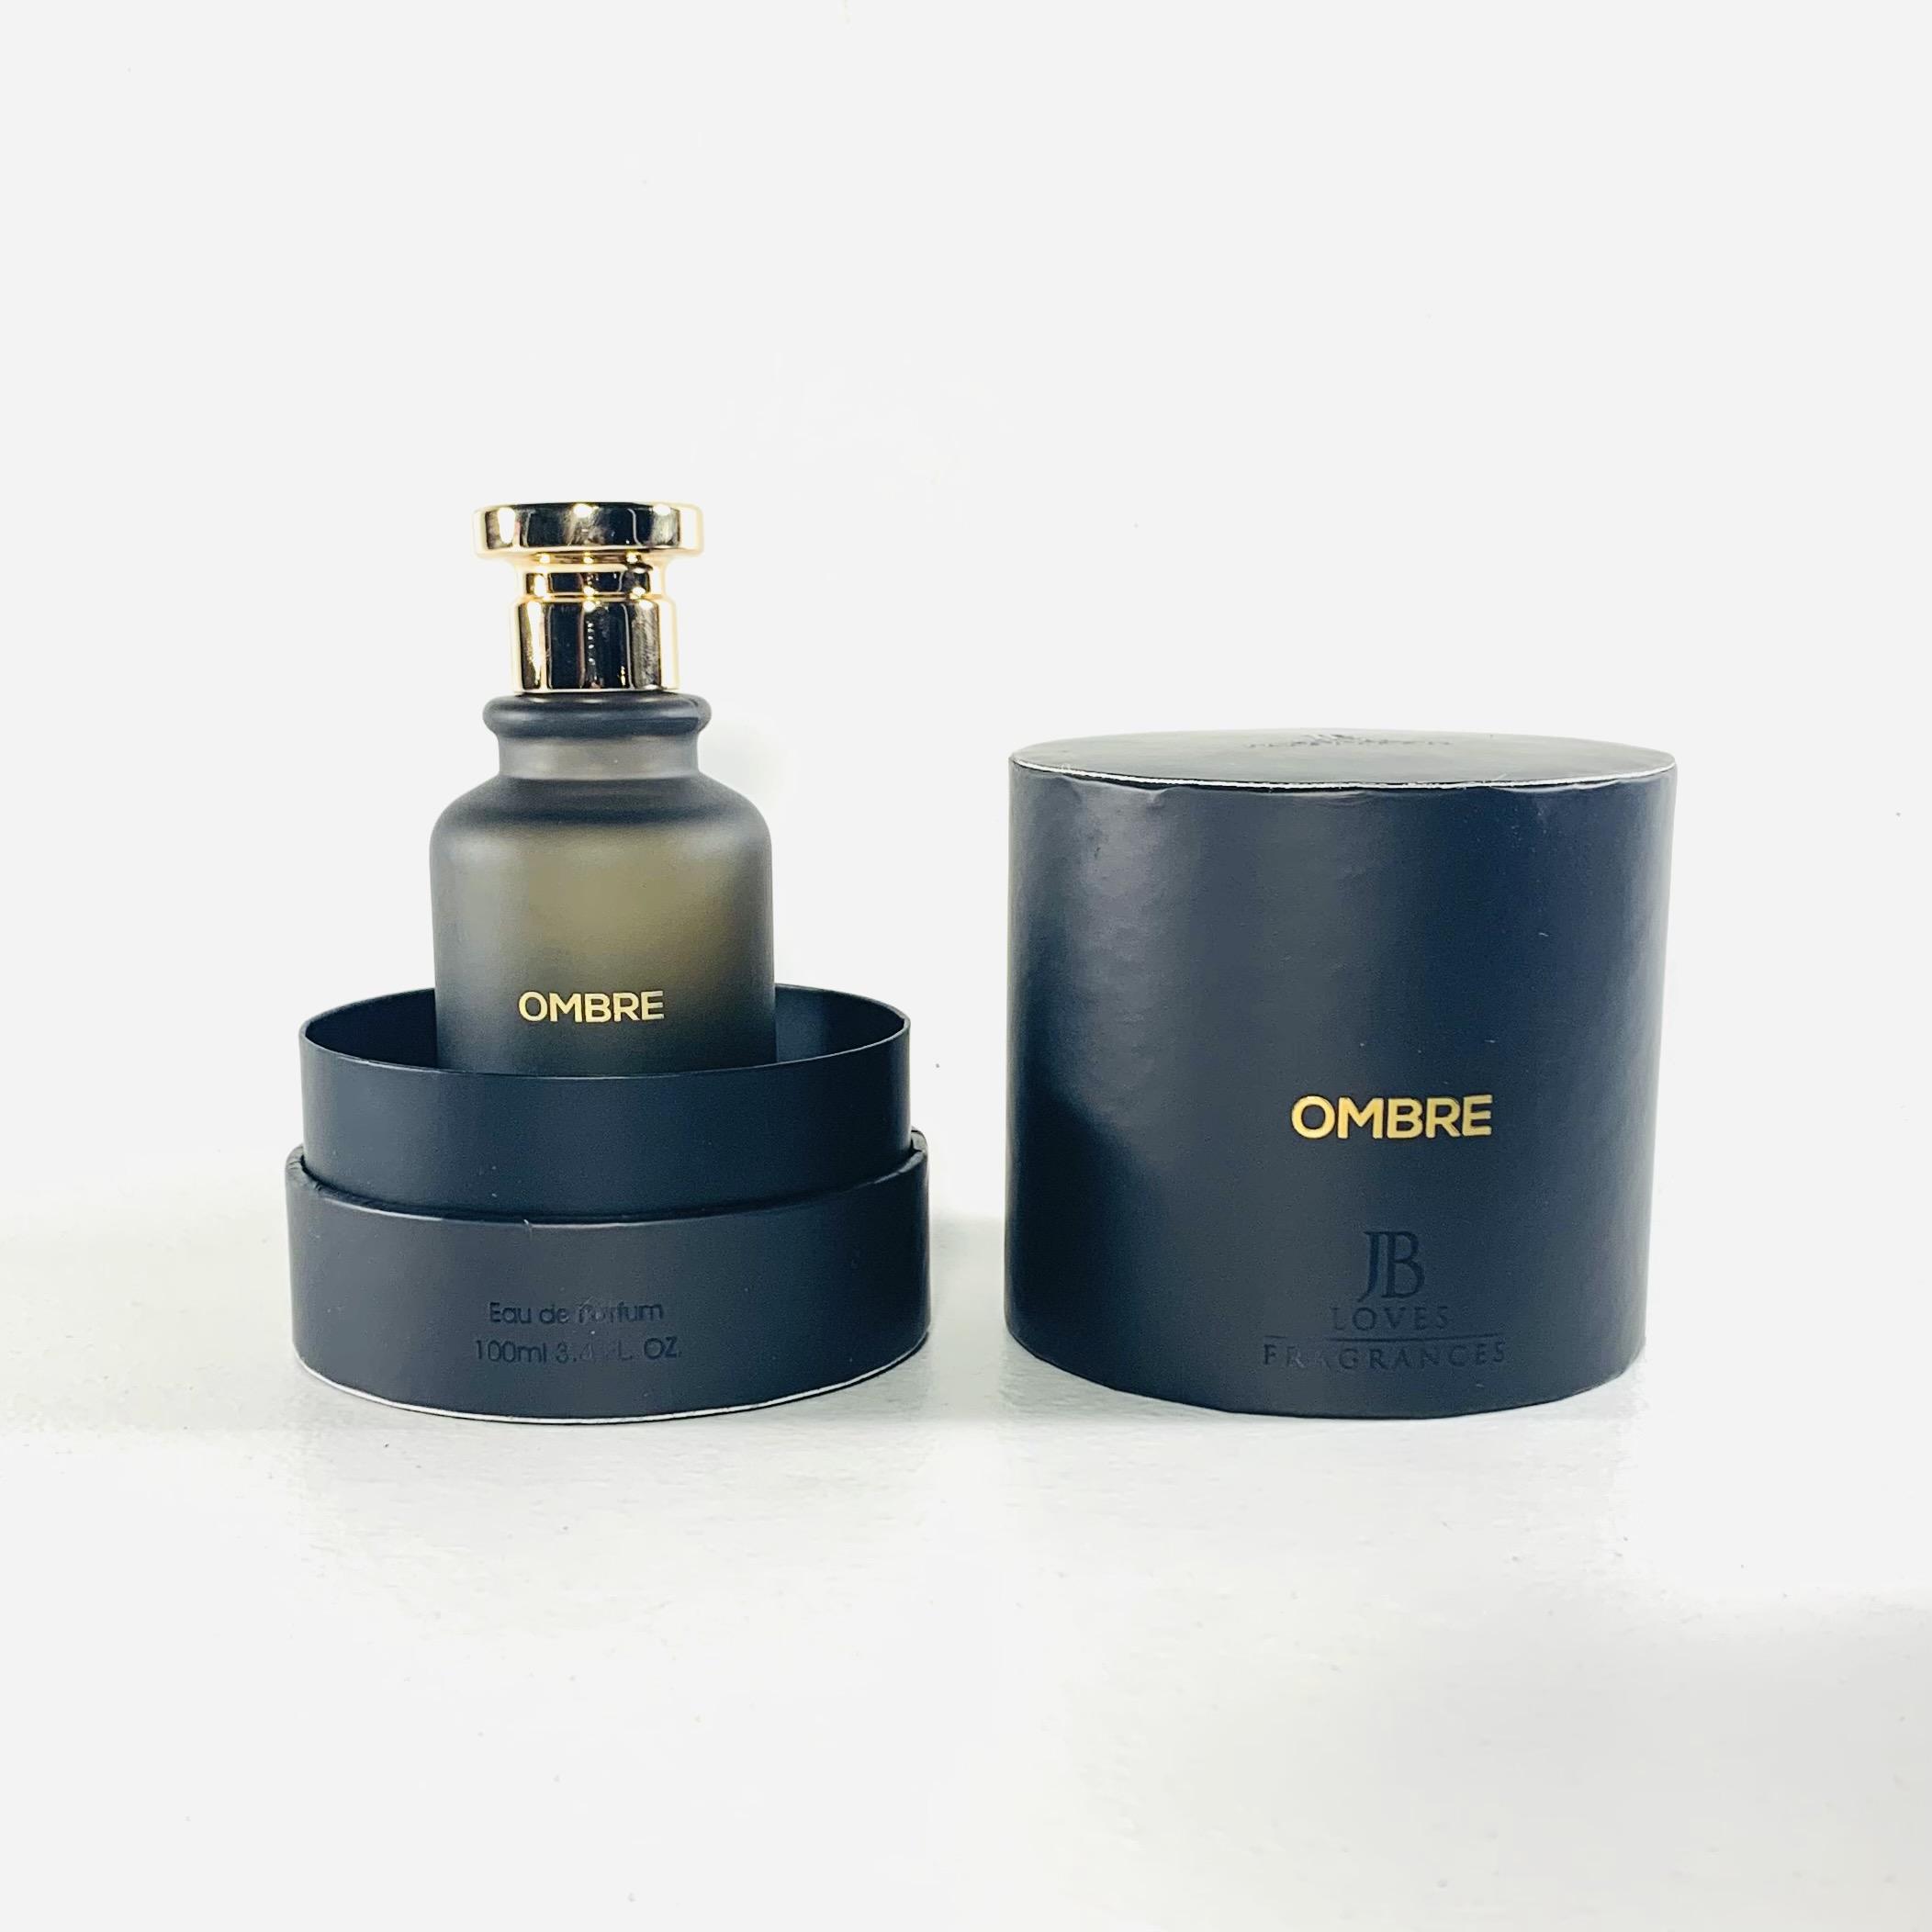 Ombre – Jb Fragrance – Eau de parfum 100ml